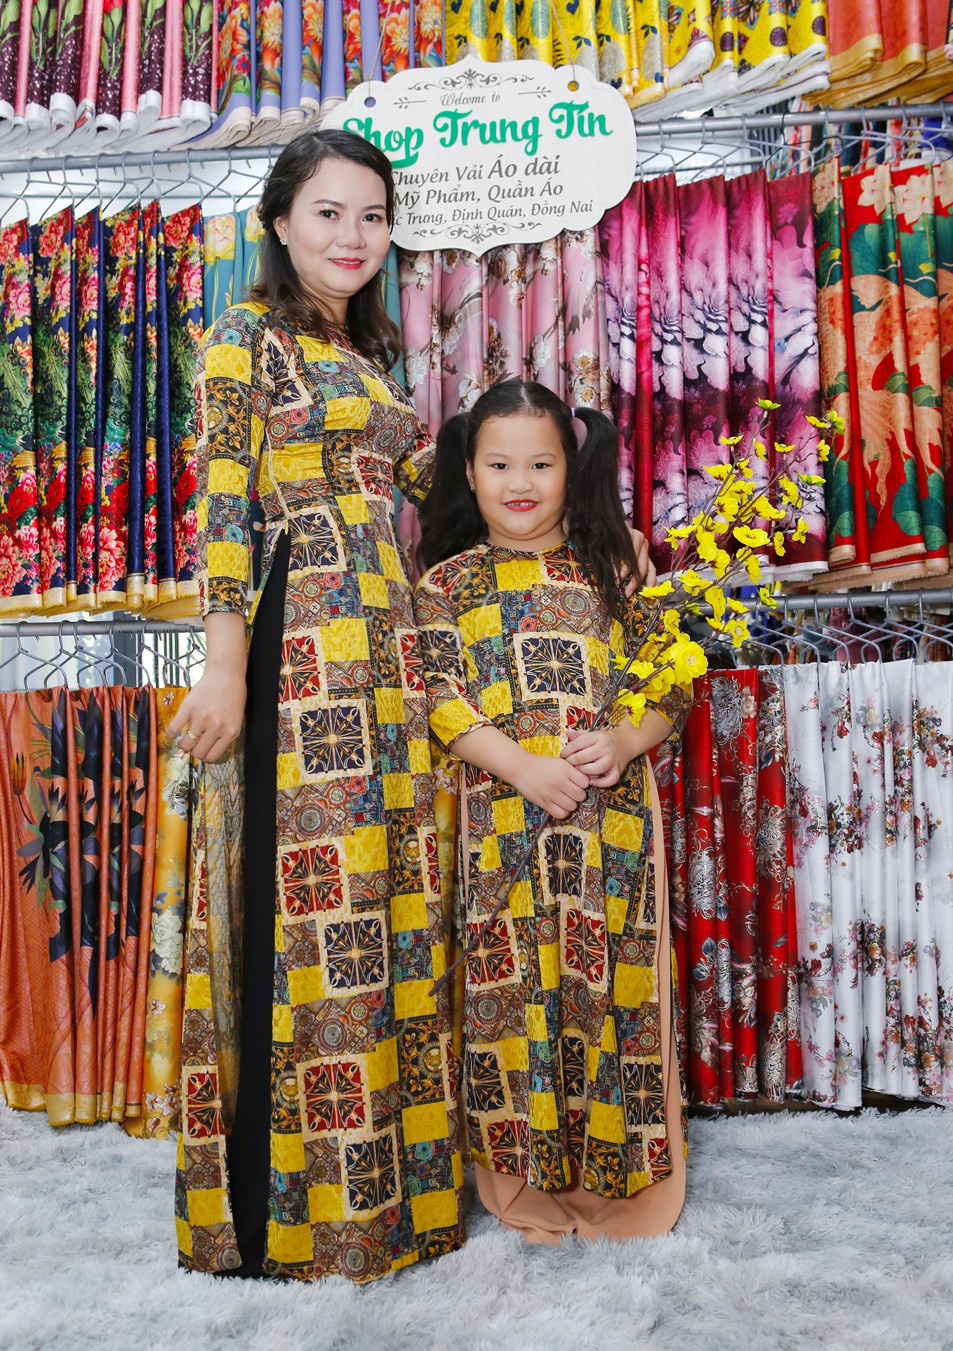 Shop Trung Tín và hành trình giữ nét truyền thống tà áo dài Việt - Ảnh 3.